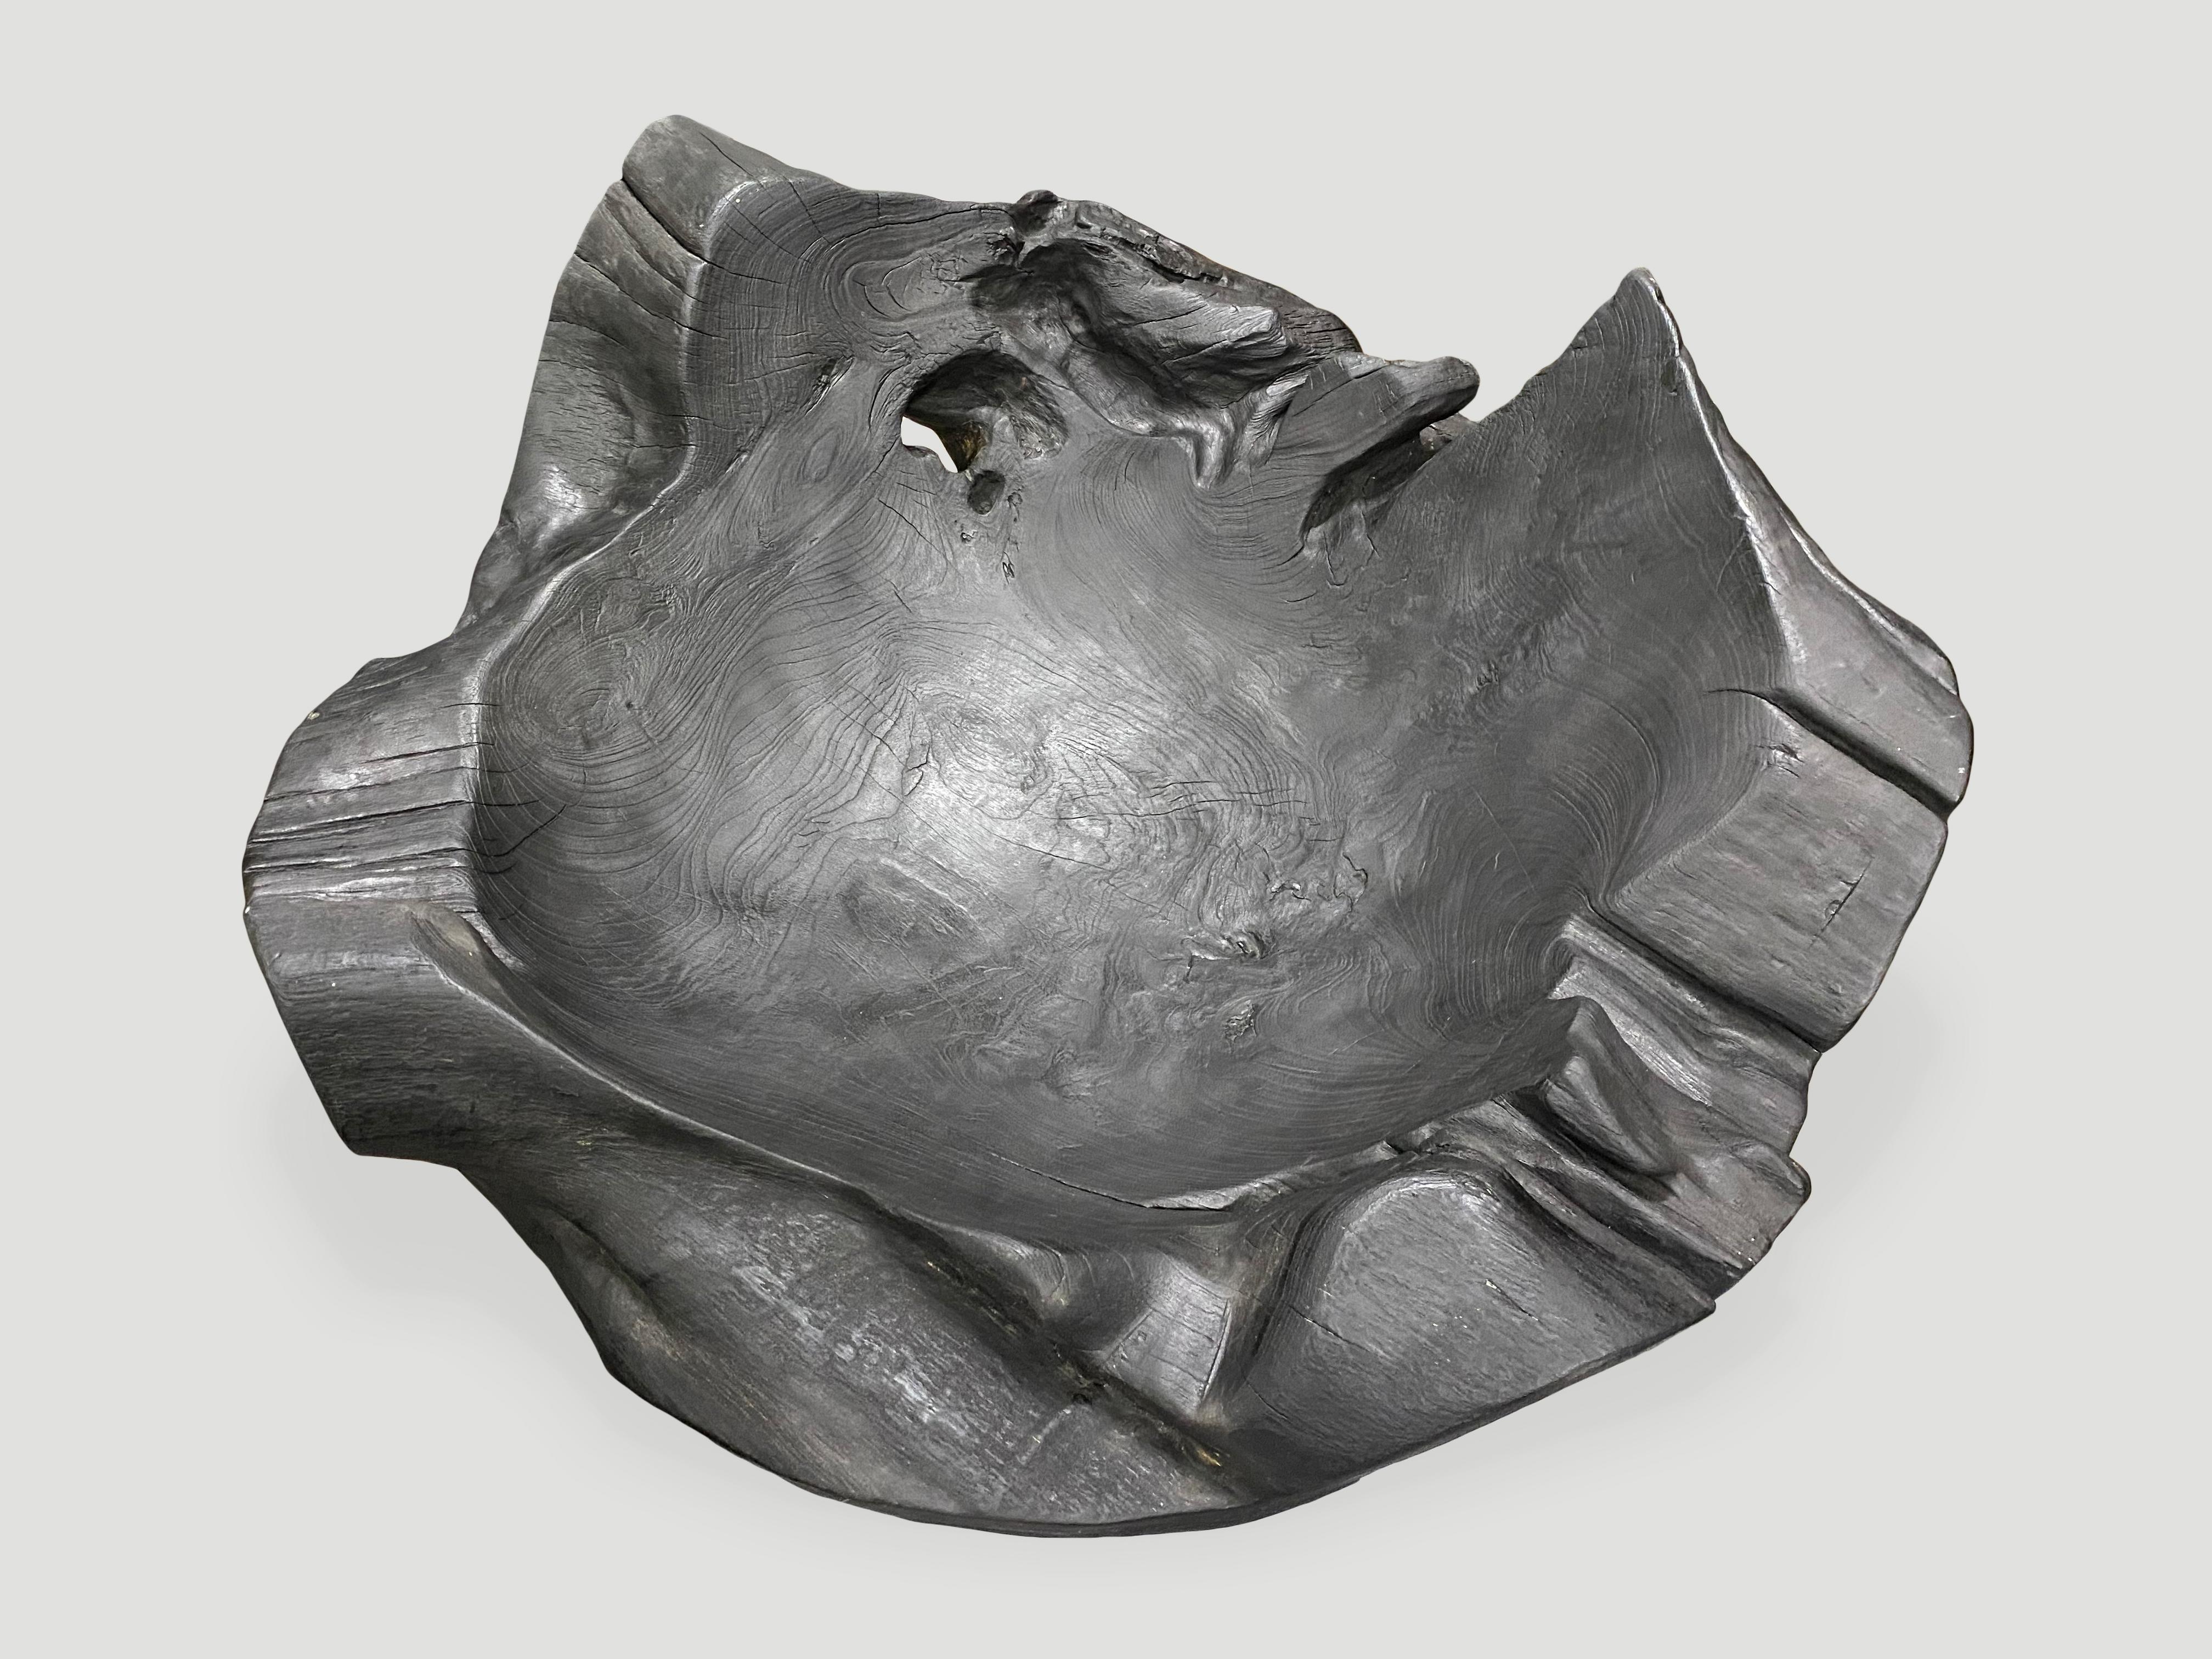 Beeindruckende Größe dieses skulpturalen Gefäßes aus wiederverwendetem Teakholz. Er eignet sich hervorragend als Kunstobjekt oder zur Aufbewahrung von Handtüchern oder Zeitschriften, um nur einige Vorschläge zu nennen. Handgeschnitzt aus einem